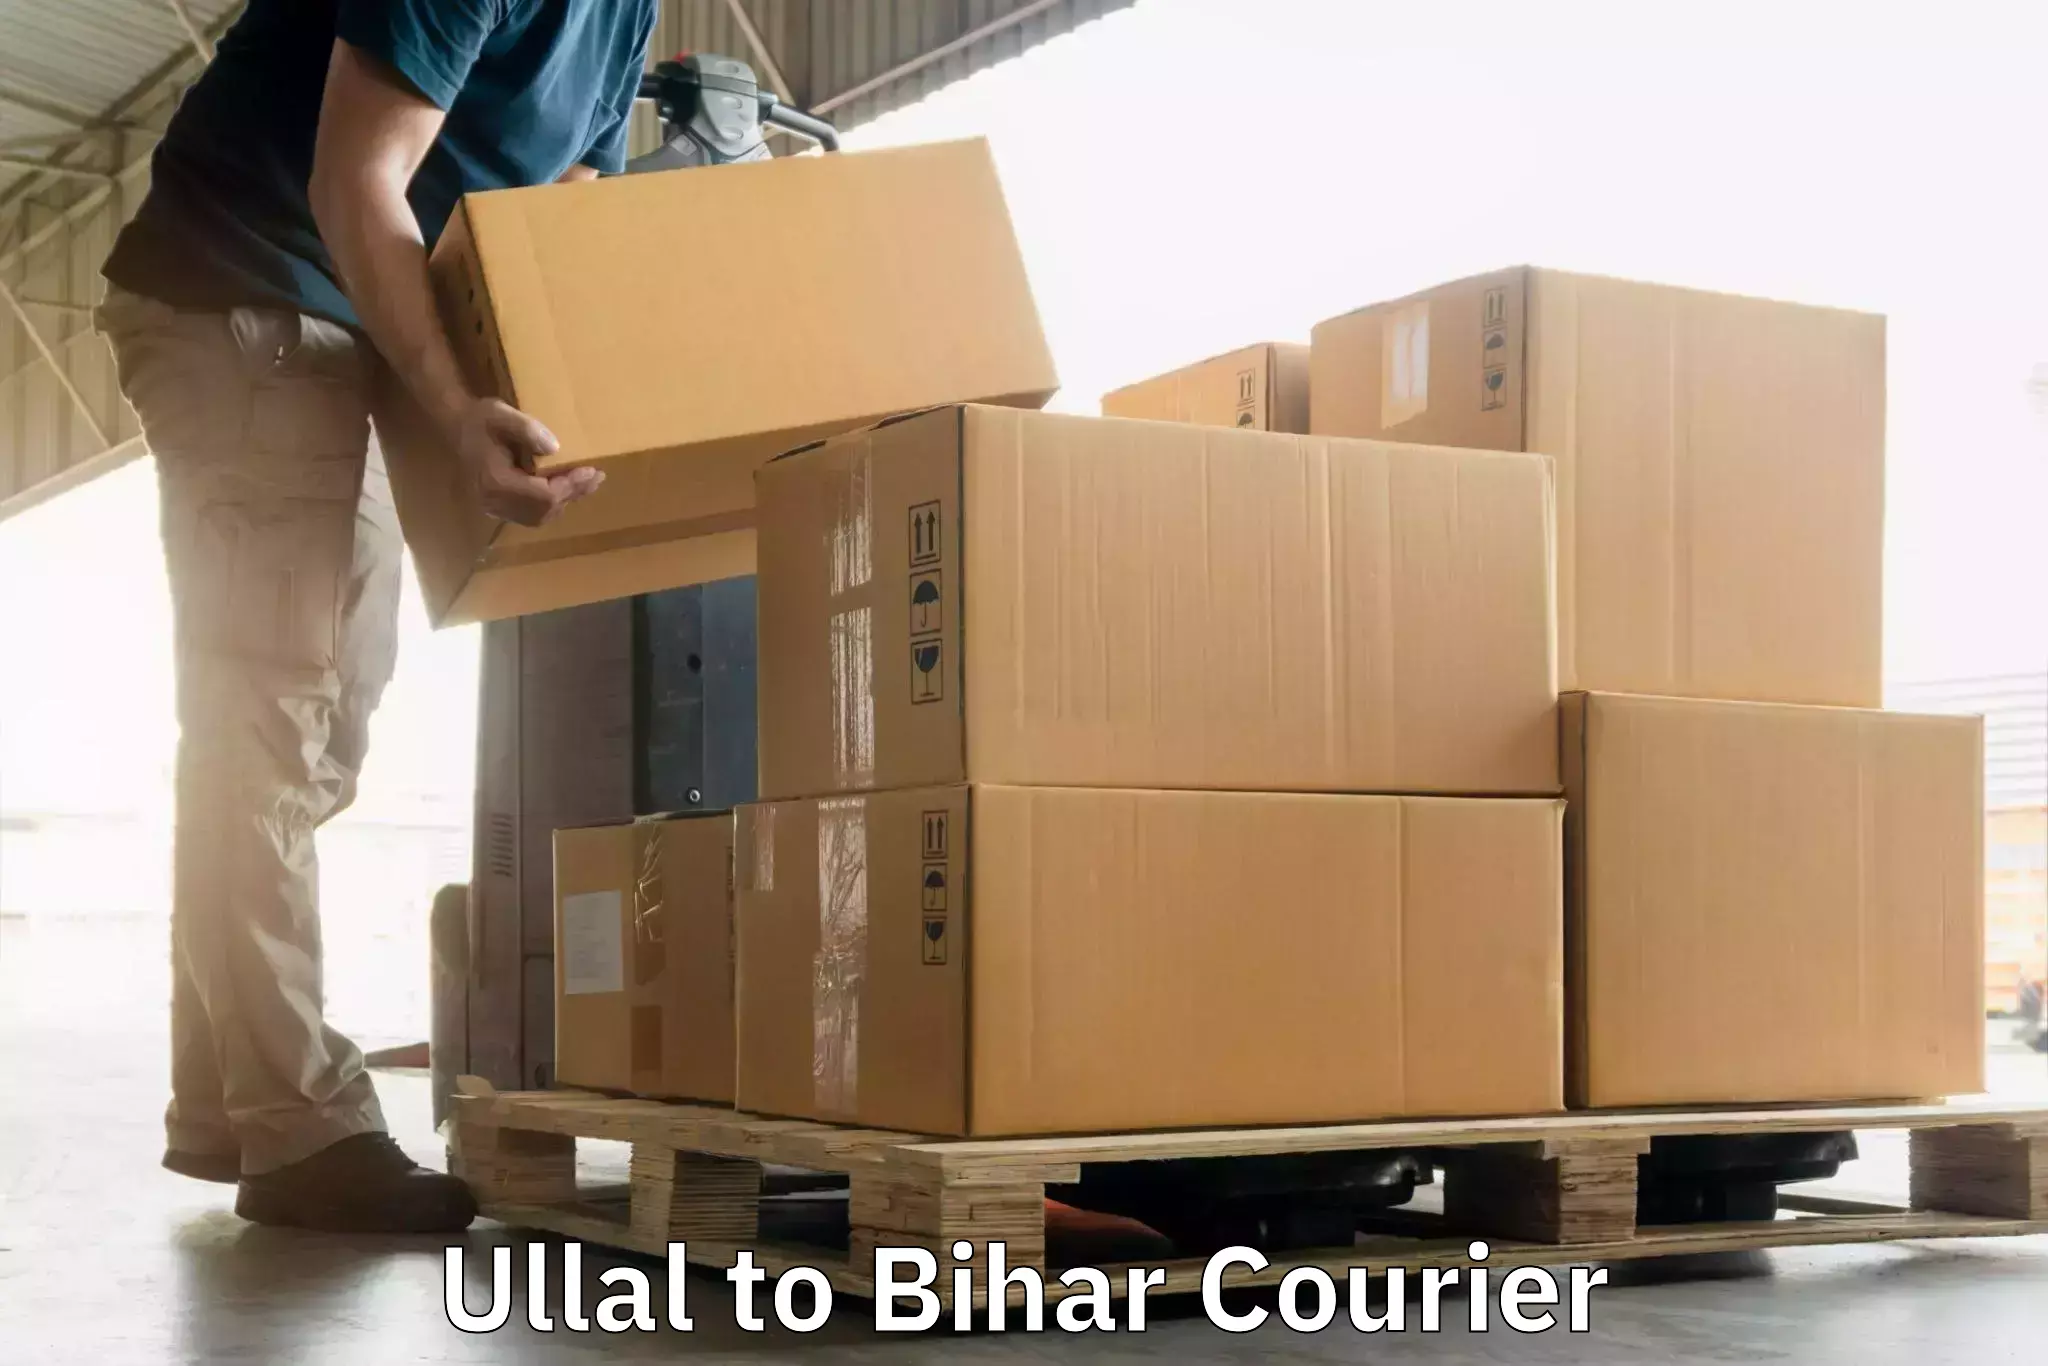 Urgent courier needs Ullal to Bihar